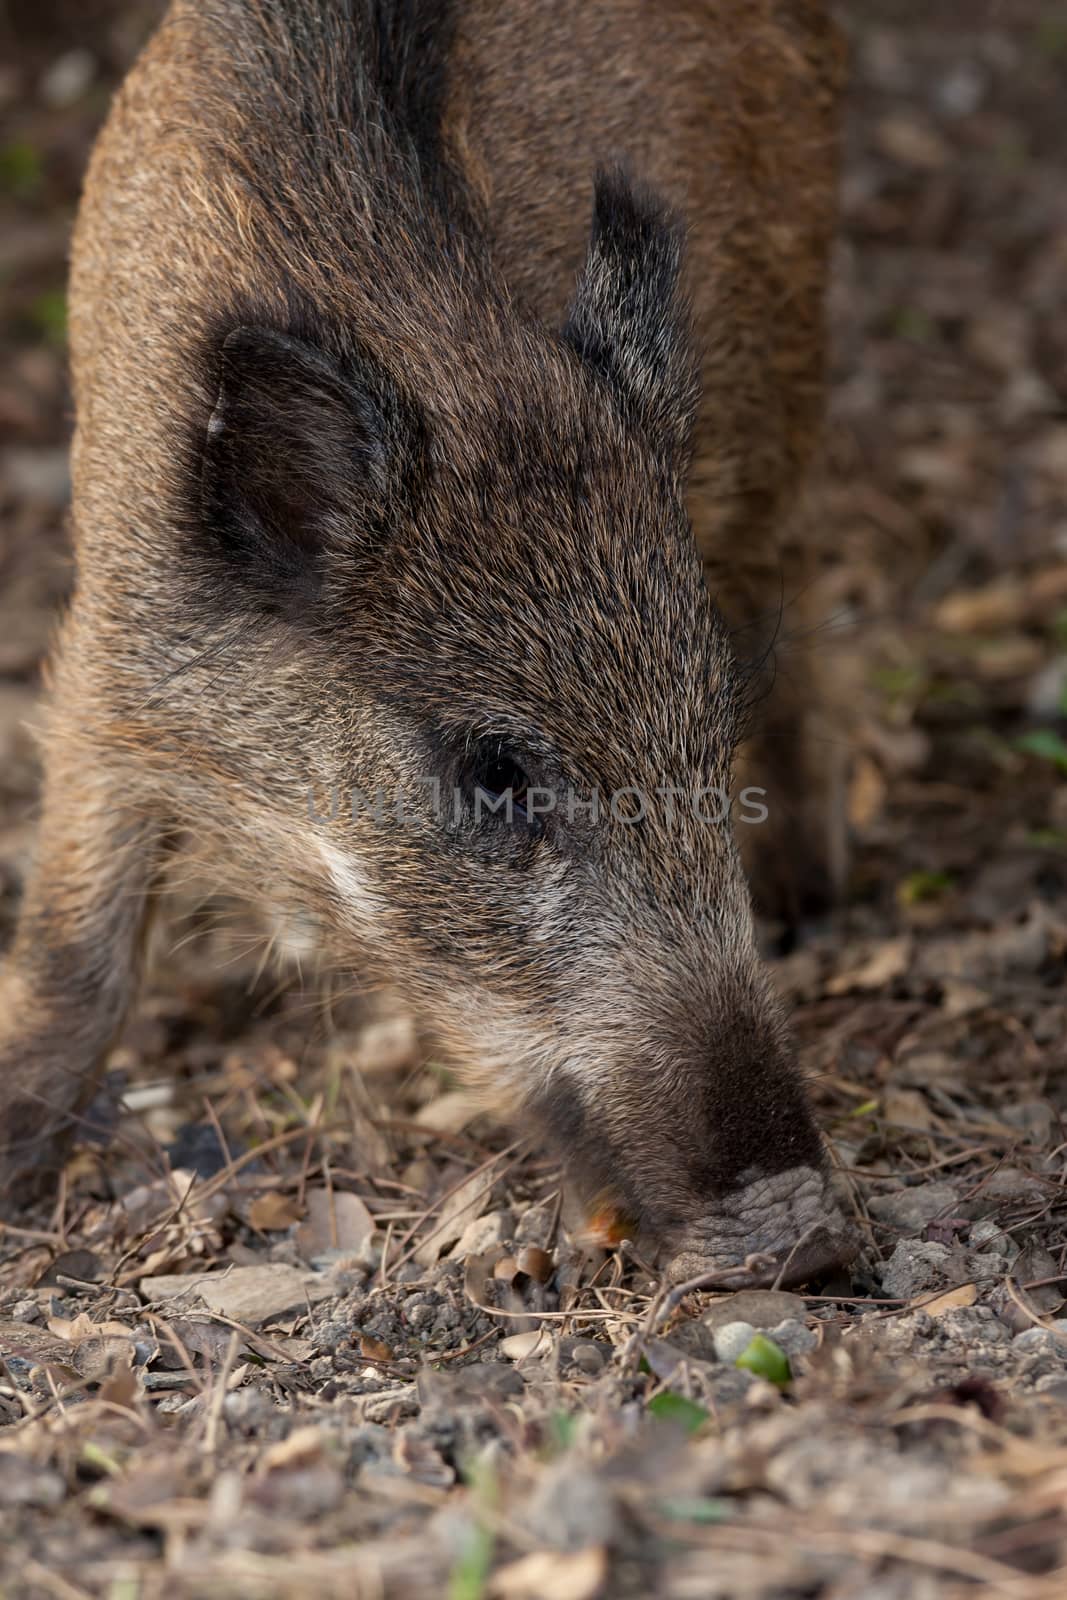 Wild boar eat acorns under the oaks